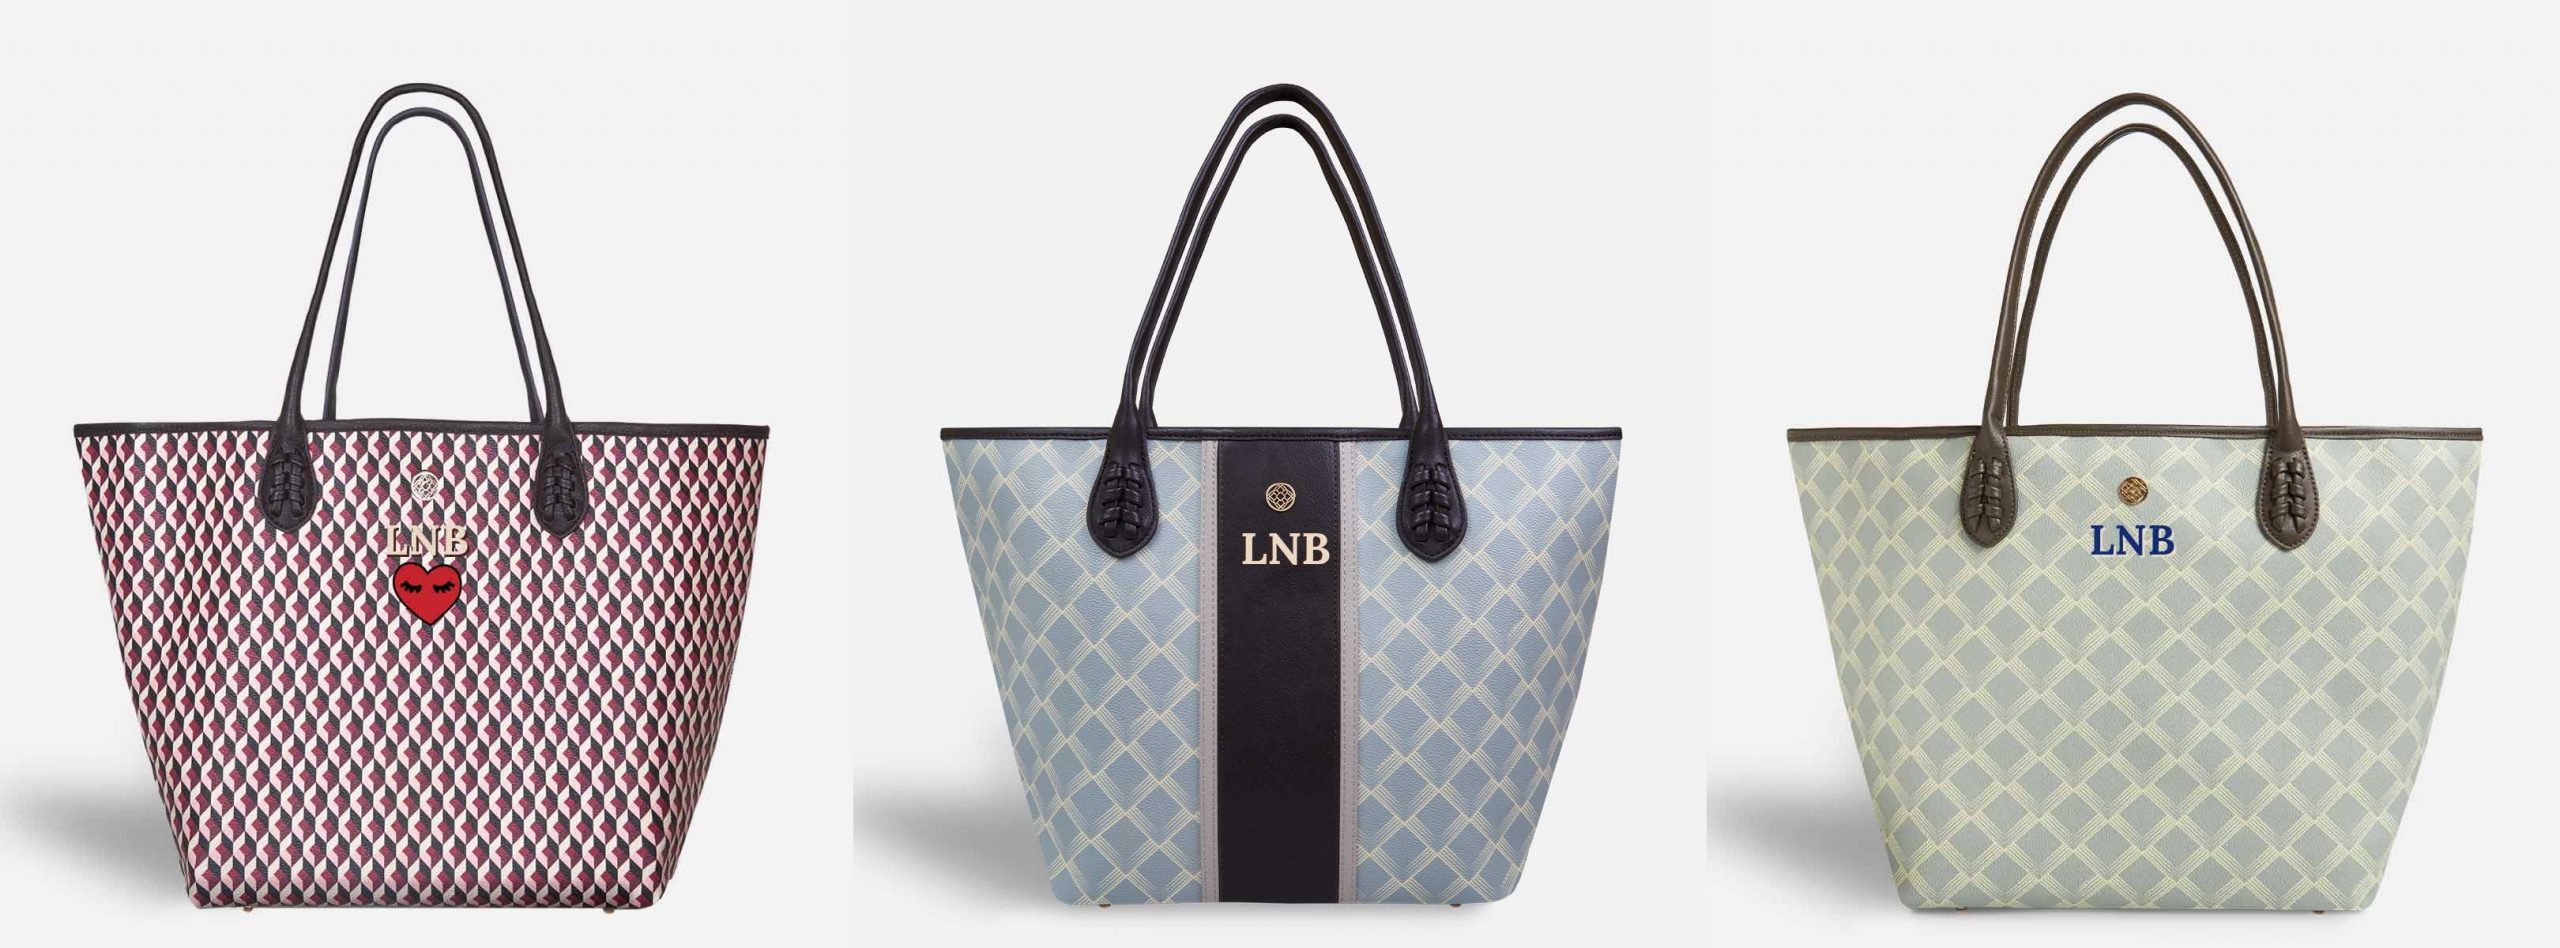 Lonbali, la firma de los bolsos y accesorios personalizables perfectos